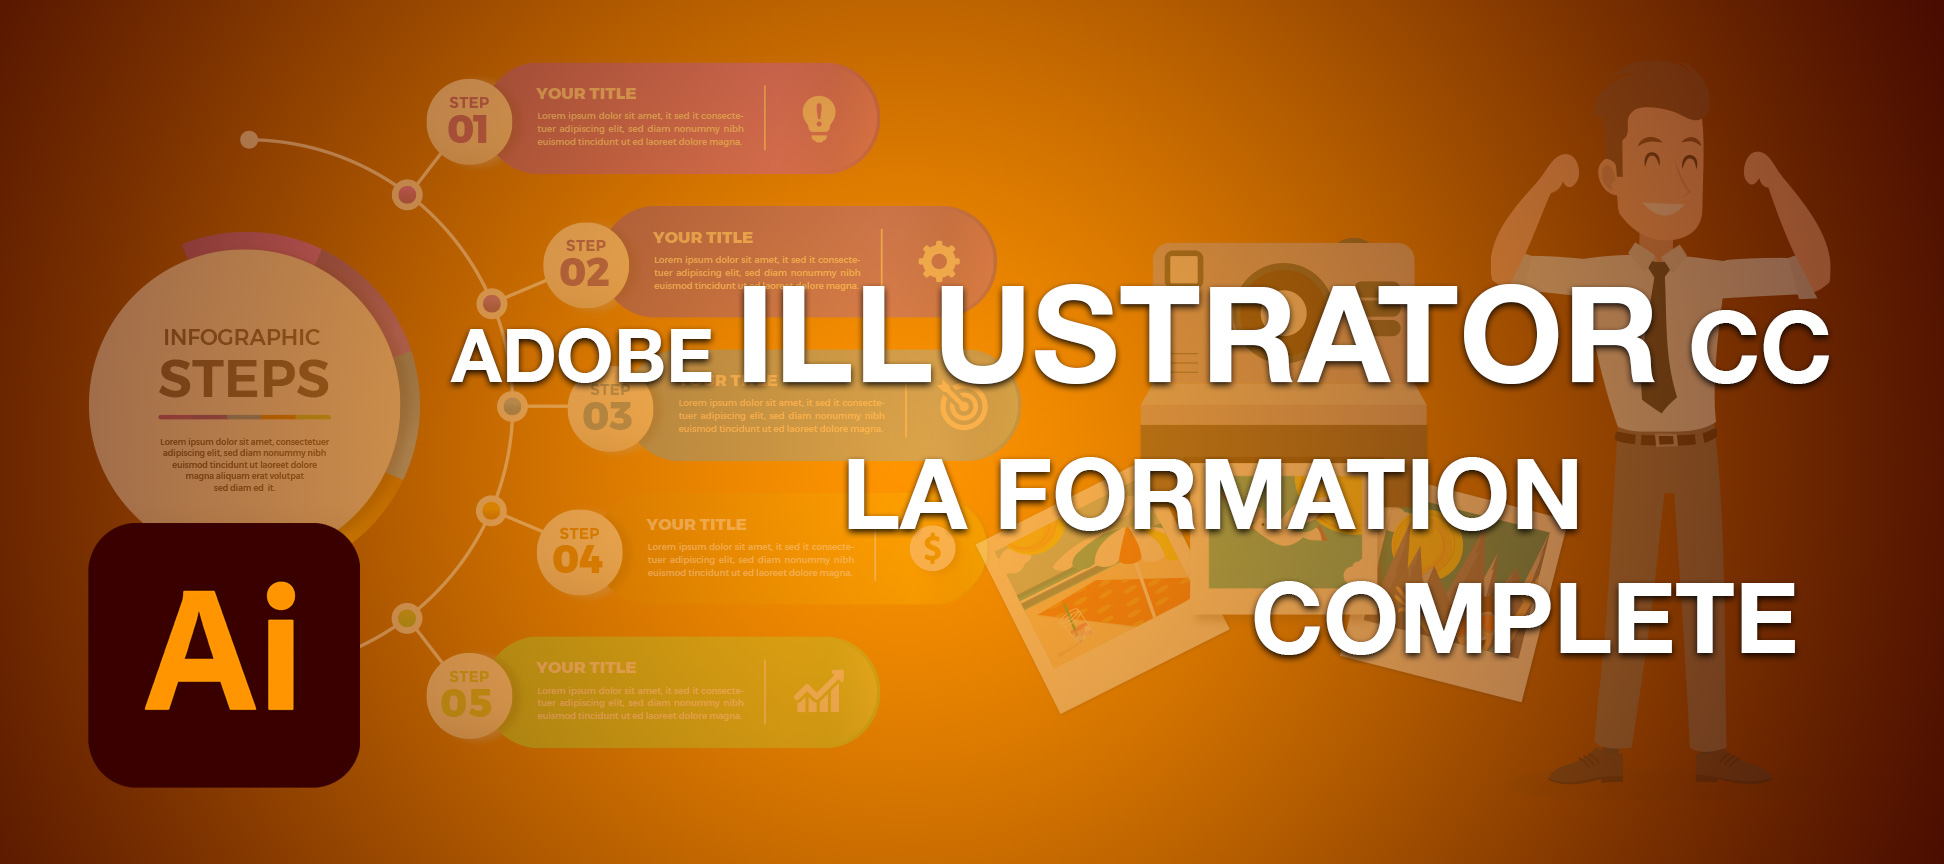 Adobe Illustrator CC la formation complète en vidéo